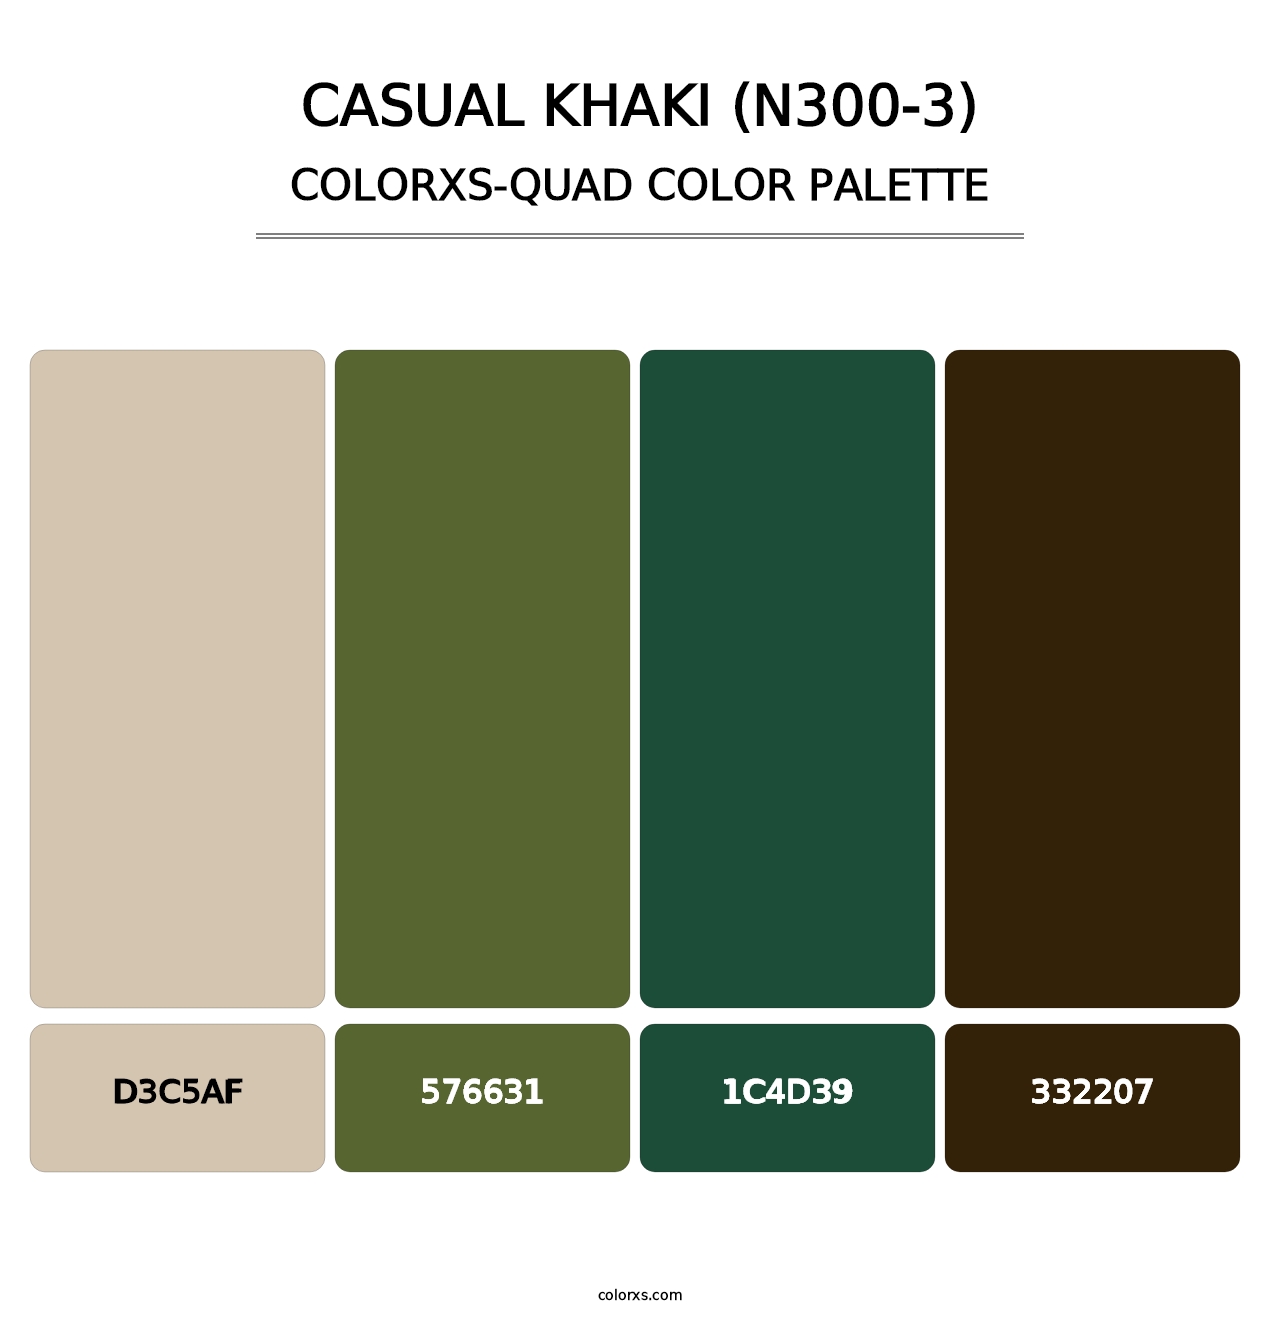 Casual Khaki (N300-3) - Colorxs Quad Palette